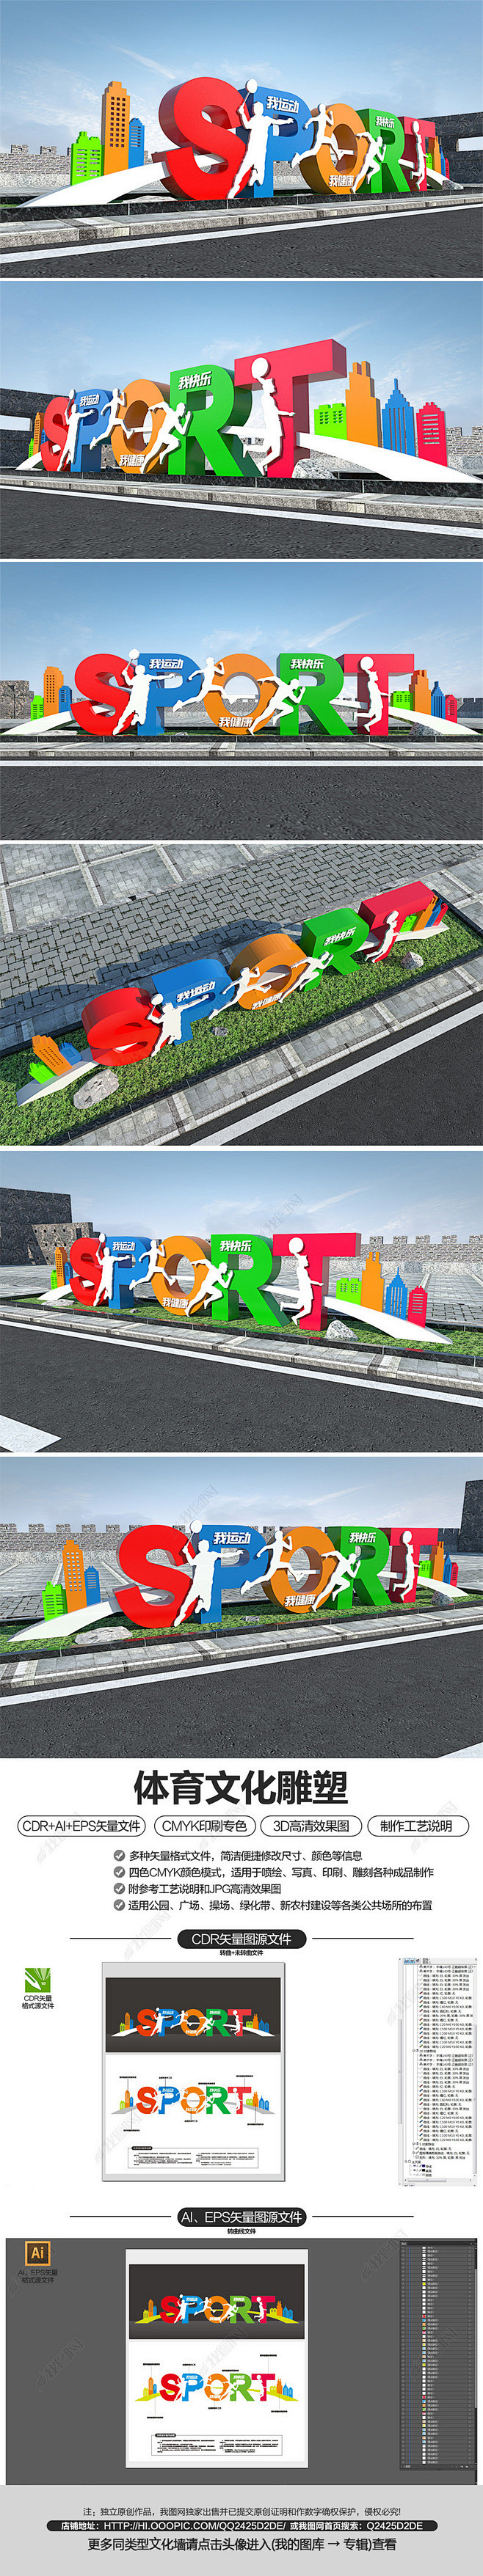 运动健身文化雕塑体育公园跑步文化墙设计